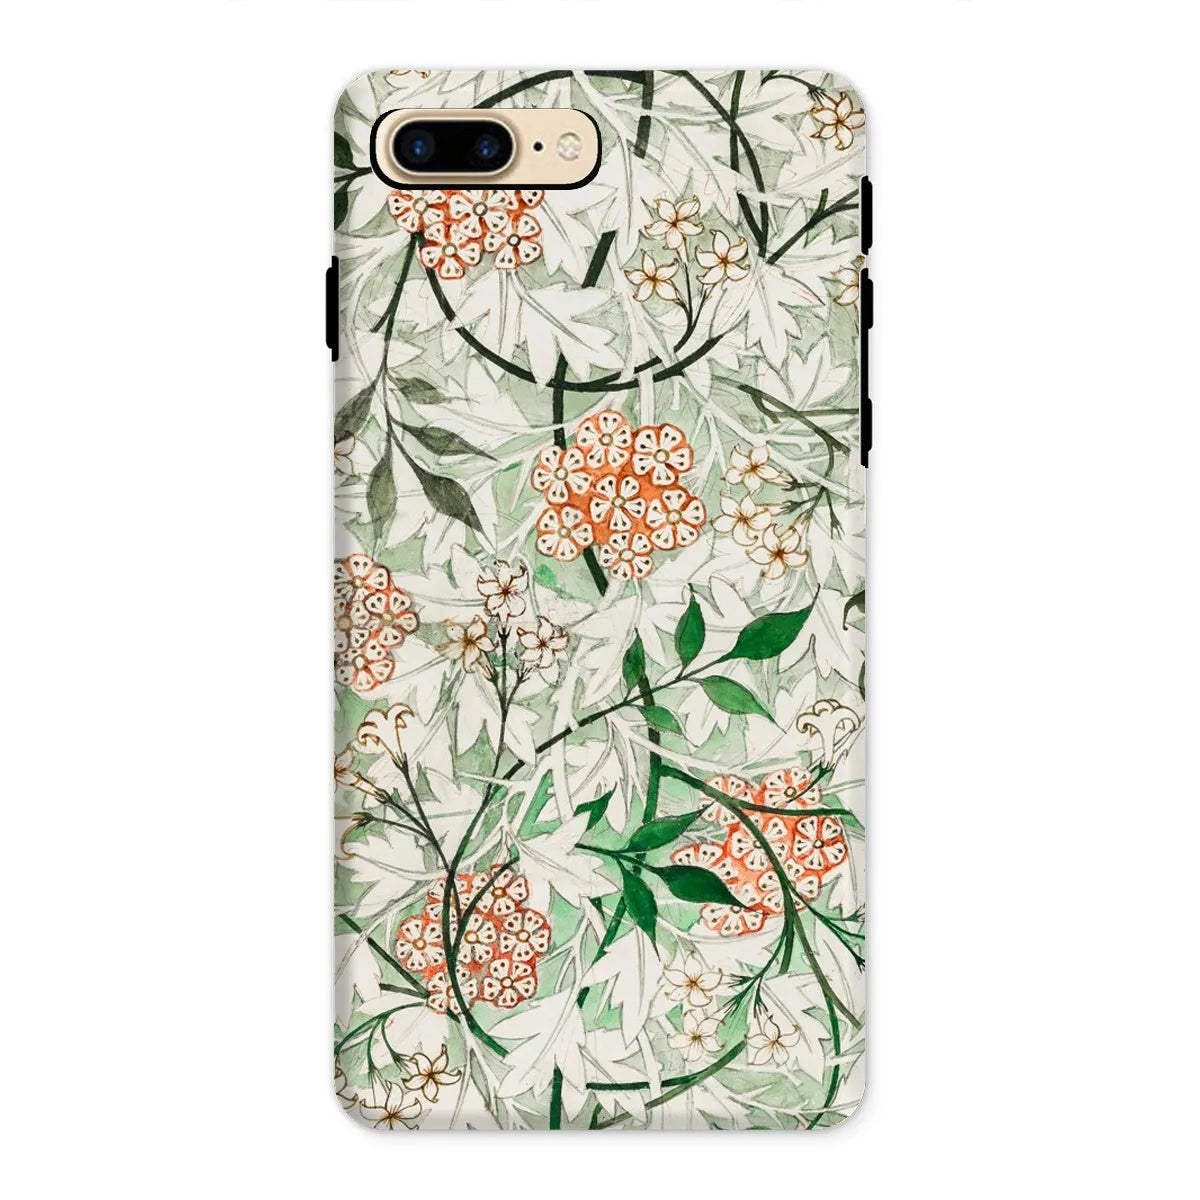 Jasmine Floral Aesthetic Art Phone Case - William Morris - Iphone 8 Plus / Matte - Mobile Phone Cases - Aesthetic Art